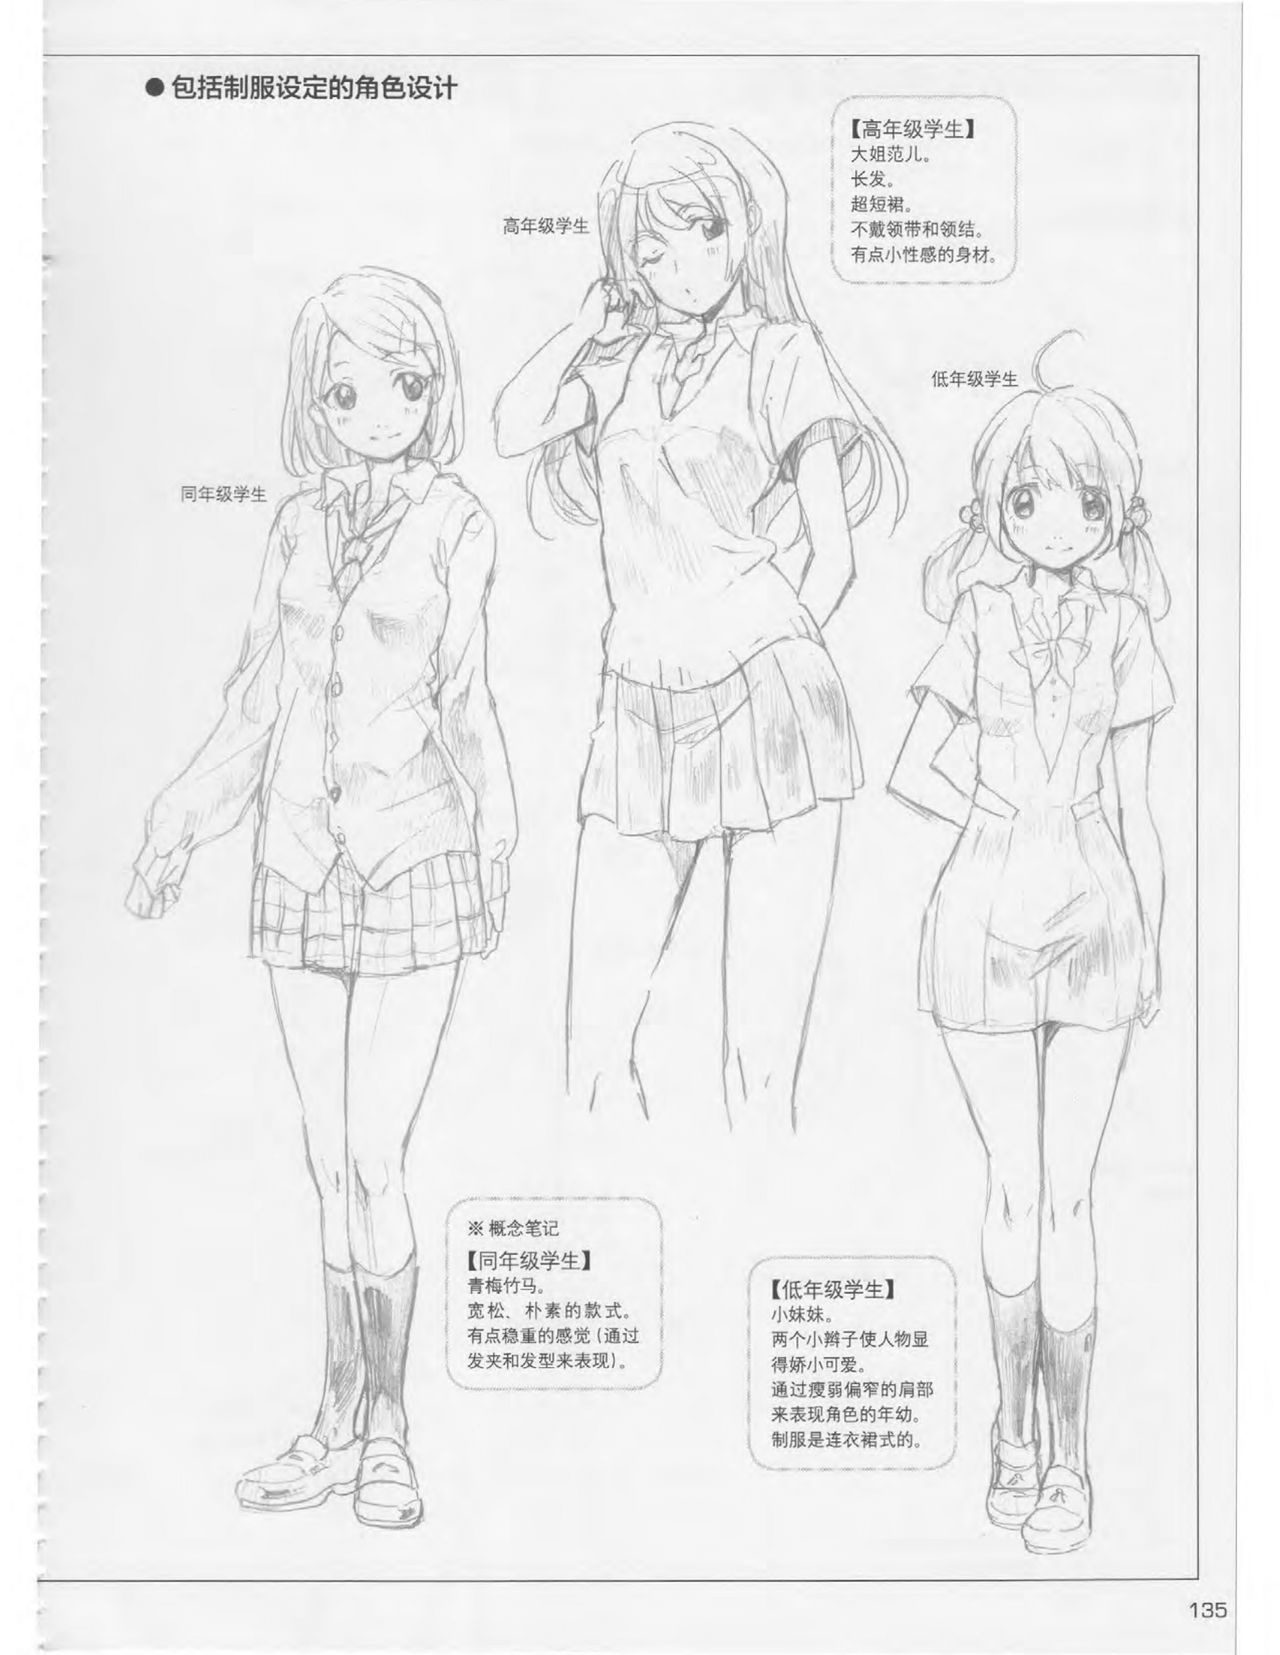 Japanese Manga Master Lecture 3: Lin Akira and Kakumaru Maru Talk About Glamorous Character Modeling 134